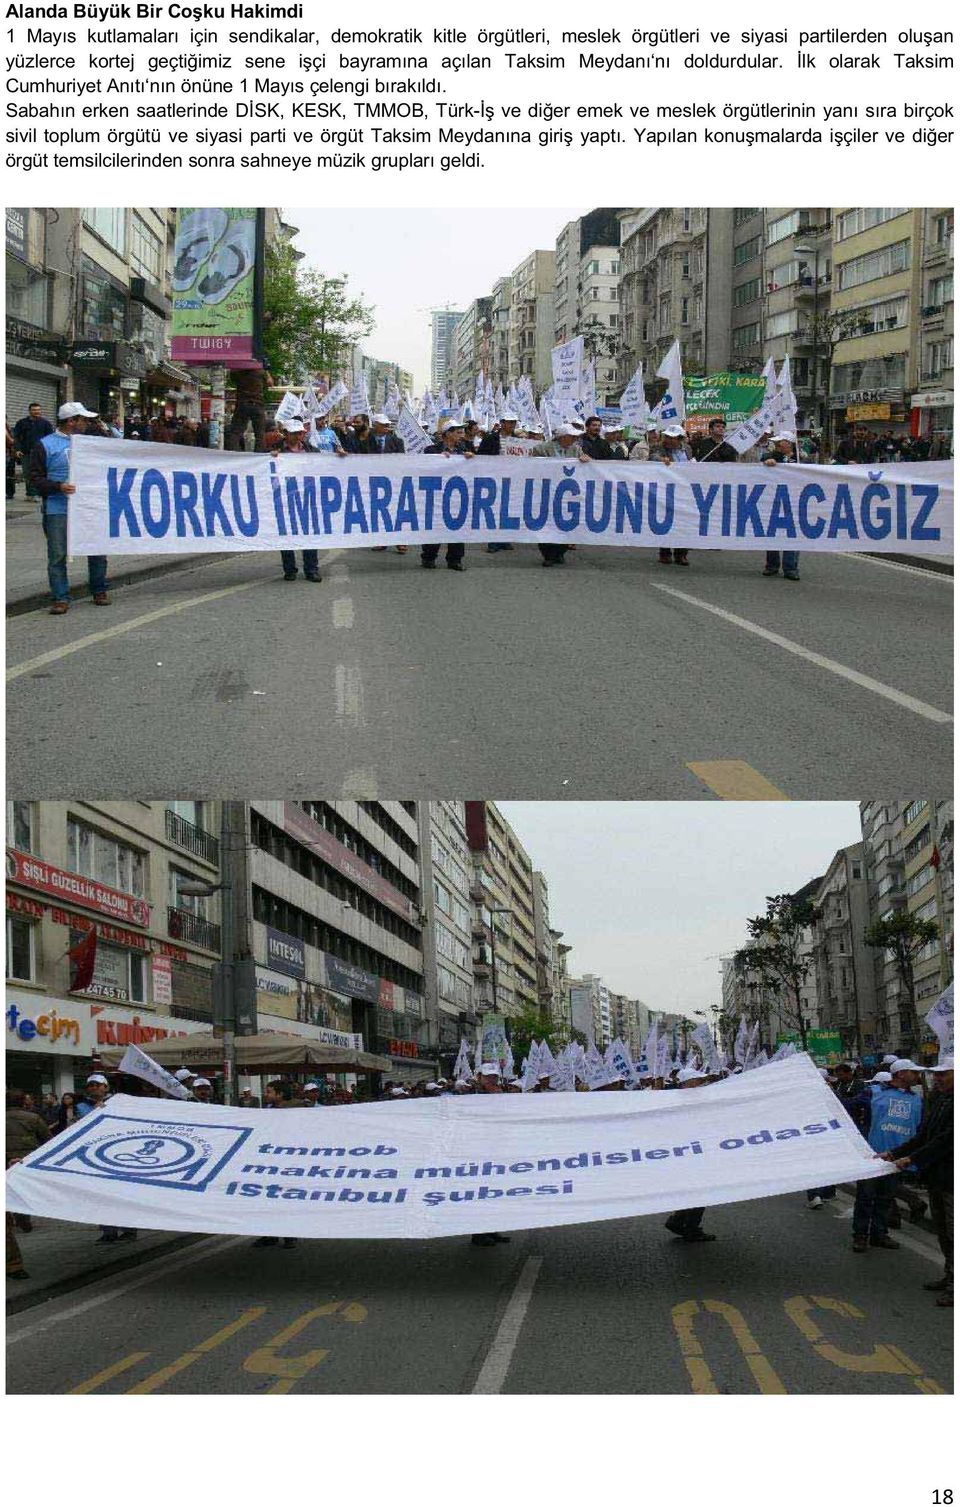 lk olarak Taksim Cumhuriyet Anıtı nın önüne 1 Mayıs çelengi bırakıldı.